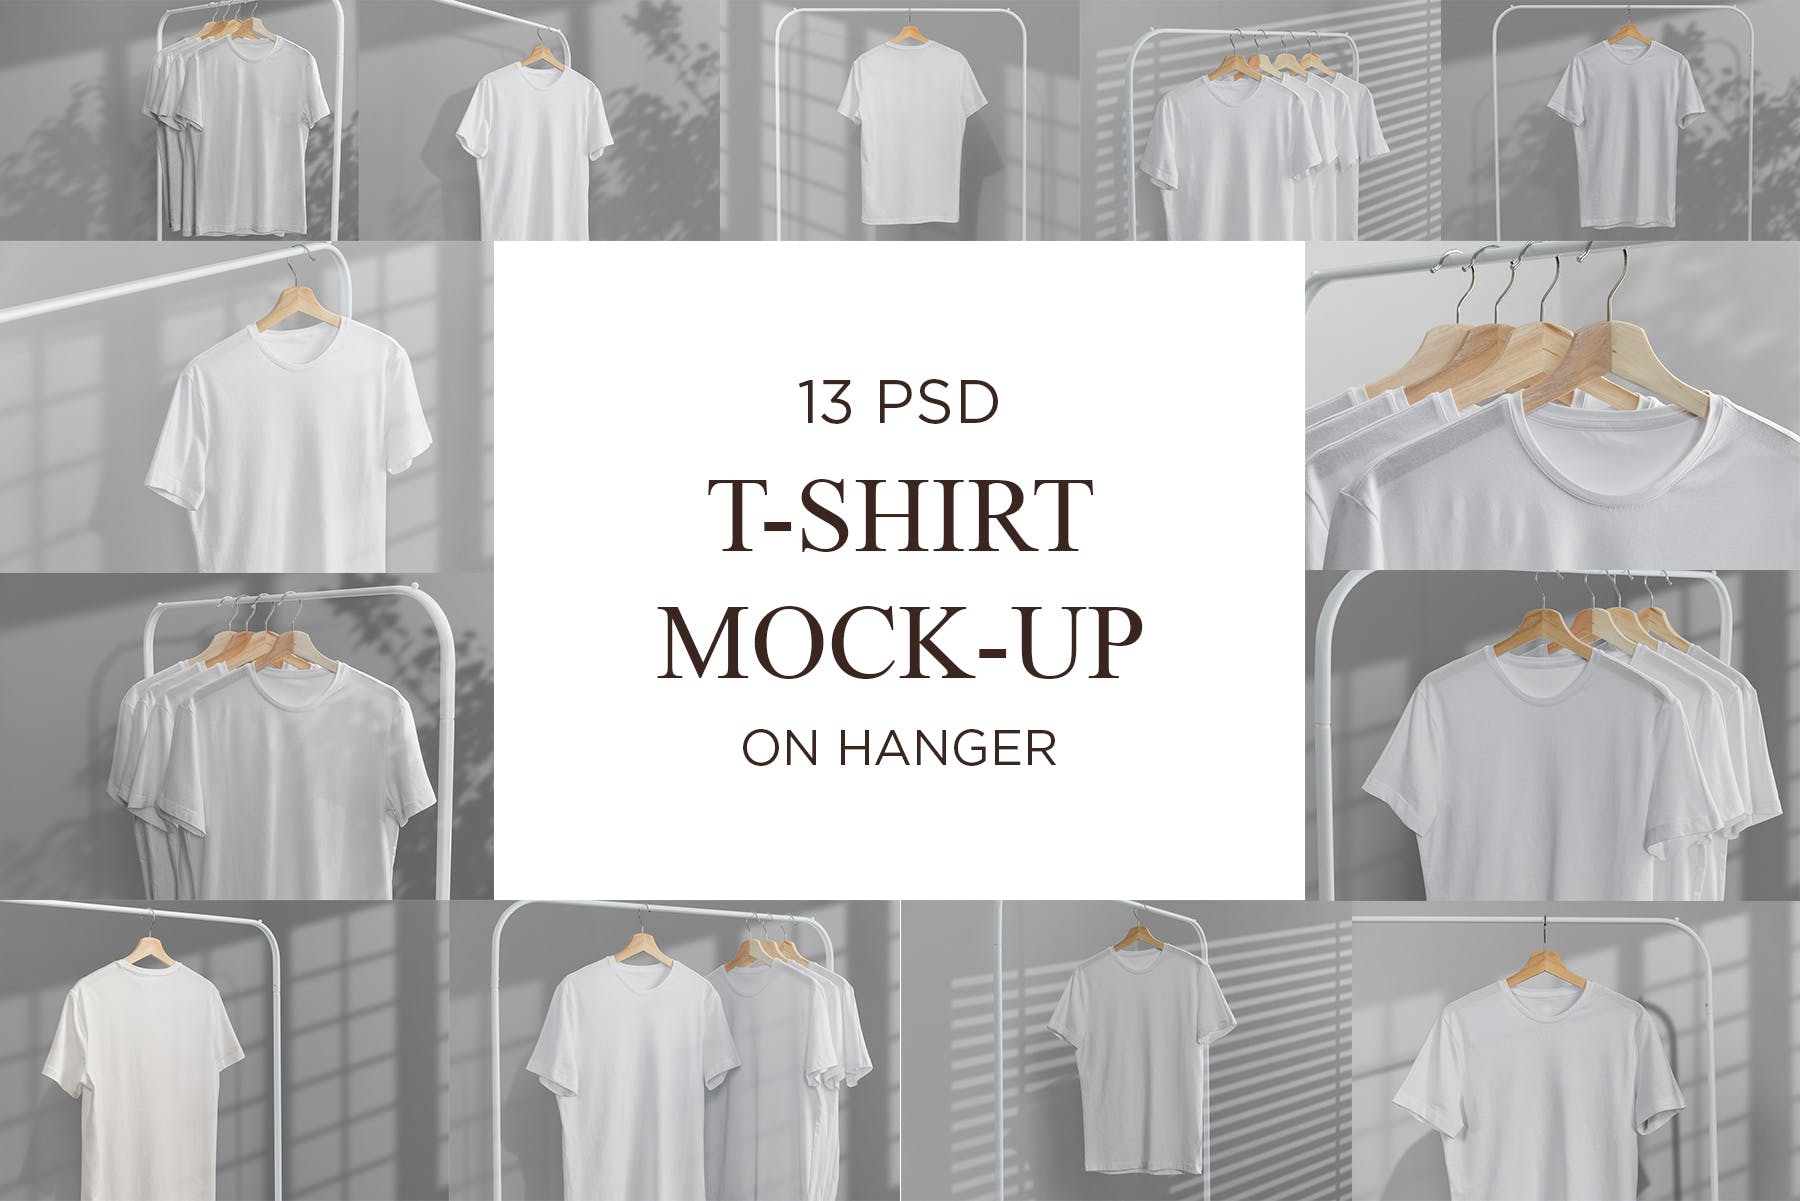 简易晾衣架T恤设计效果图样机素材库精选 T-Shirt Mock-Up on Hanger插图(8)